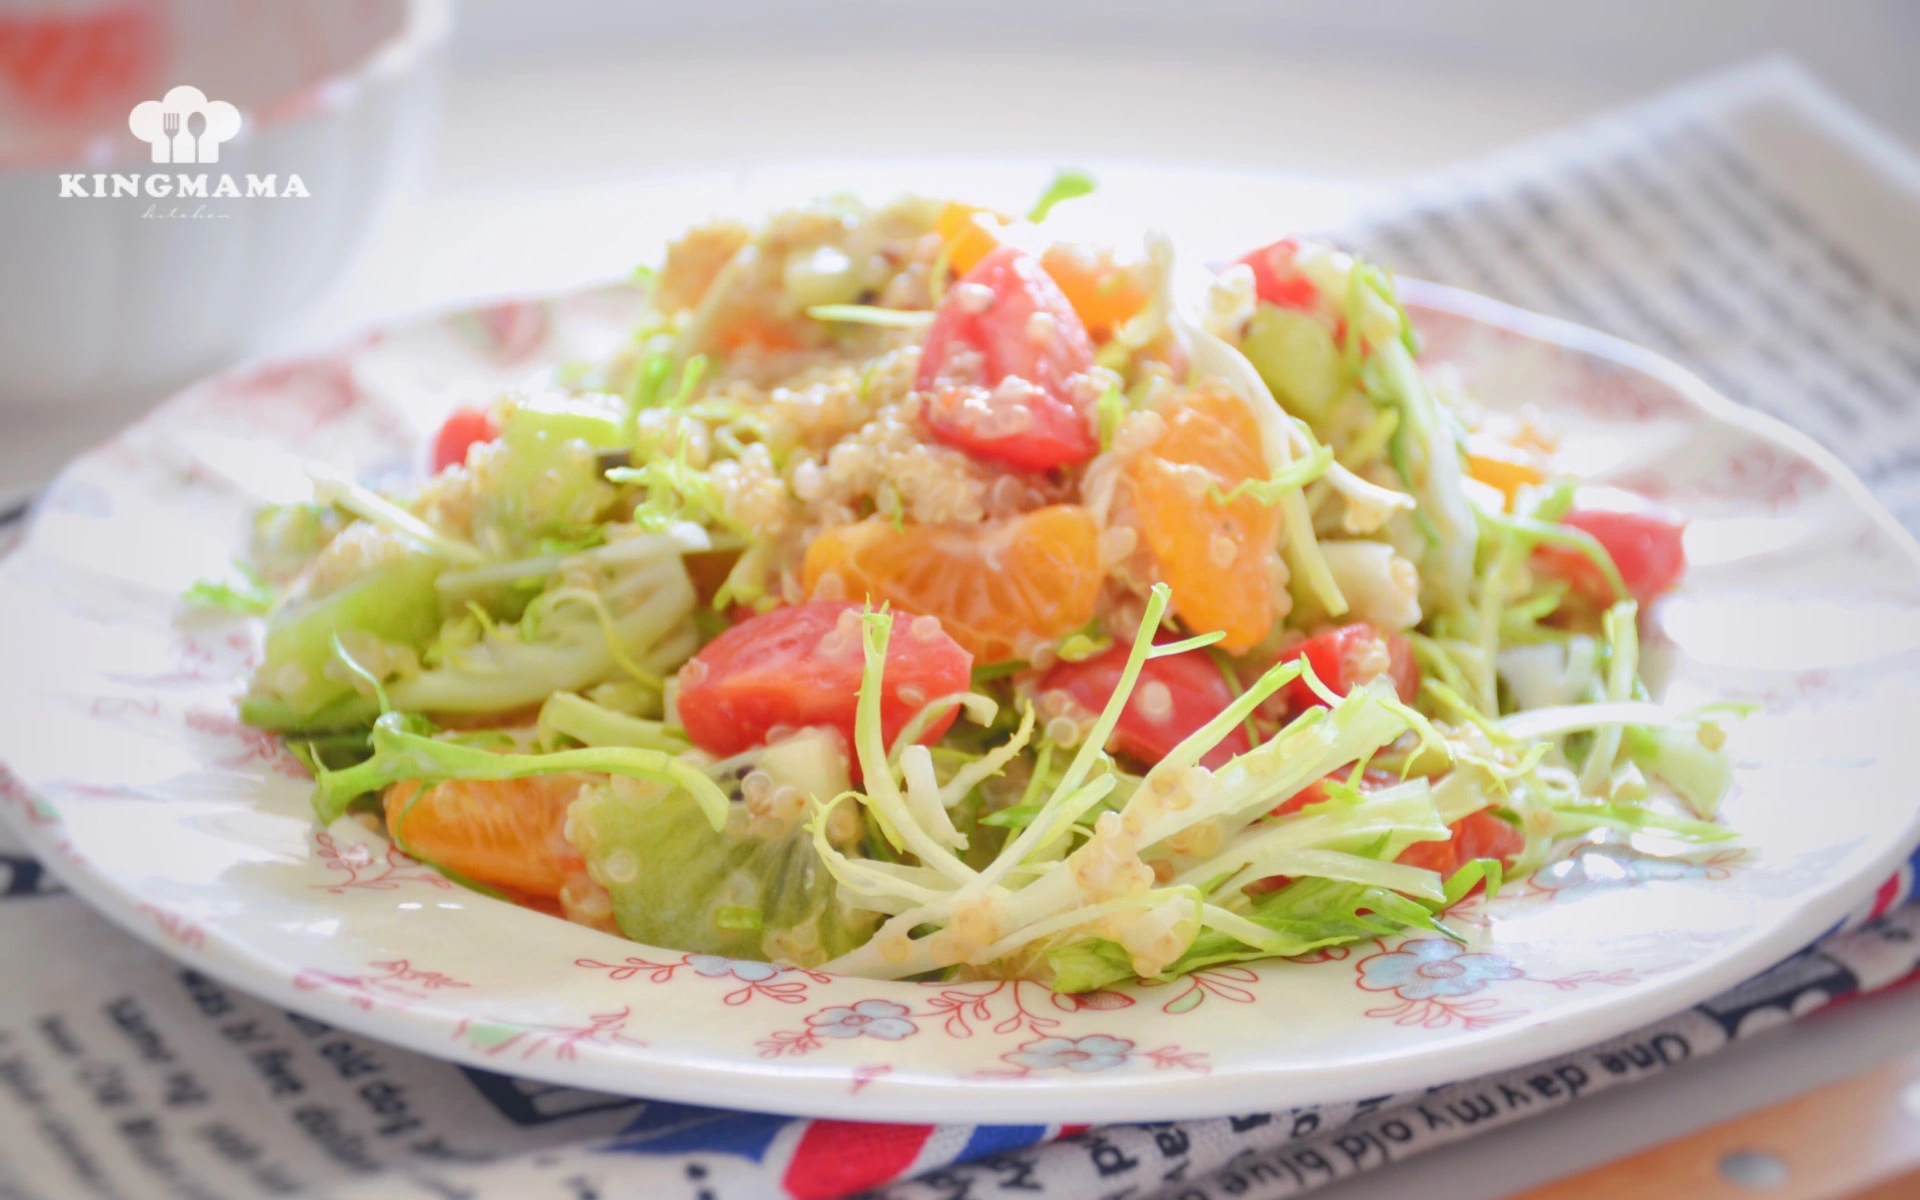 Bí quyết nuôi dưỡng làn da và giảm cân siêu tốc đón Tết chính là ăn món salad này mỗi ngày!